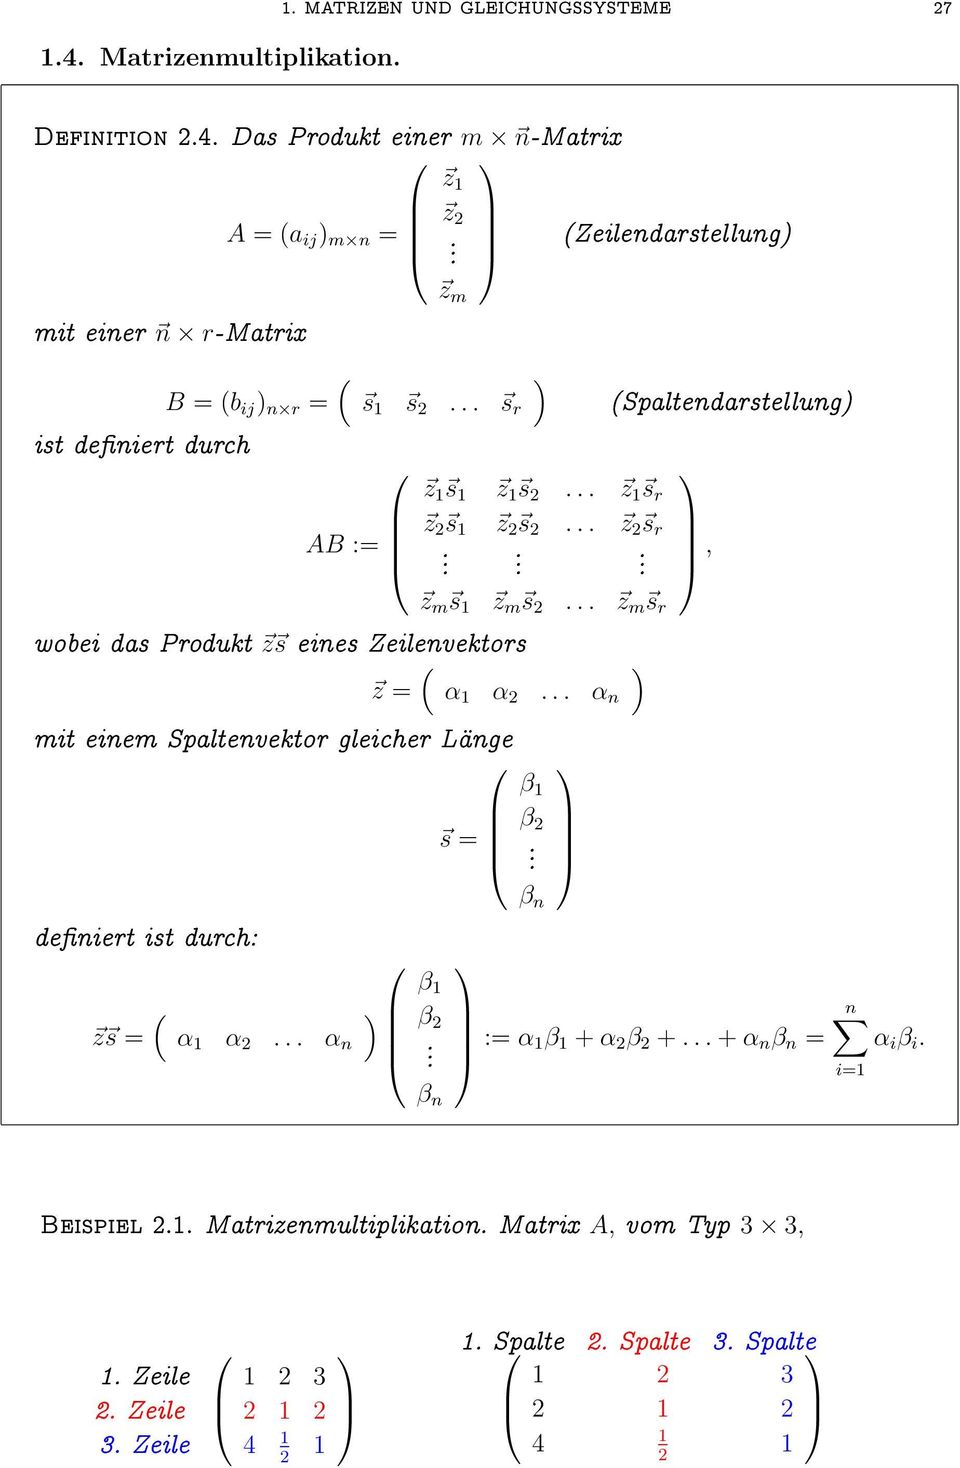 Zeilenvektors z α α 2 α n mit einem Spaltenvektor gleicher Lange s β β 2 Spaltendarstellung, deniert ist durch: z s α α 2 α n β β 2 β n β n : α β + α